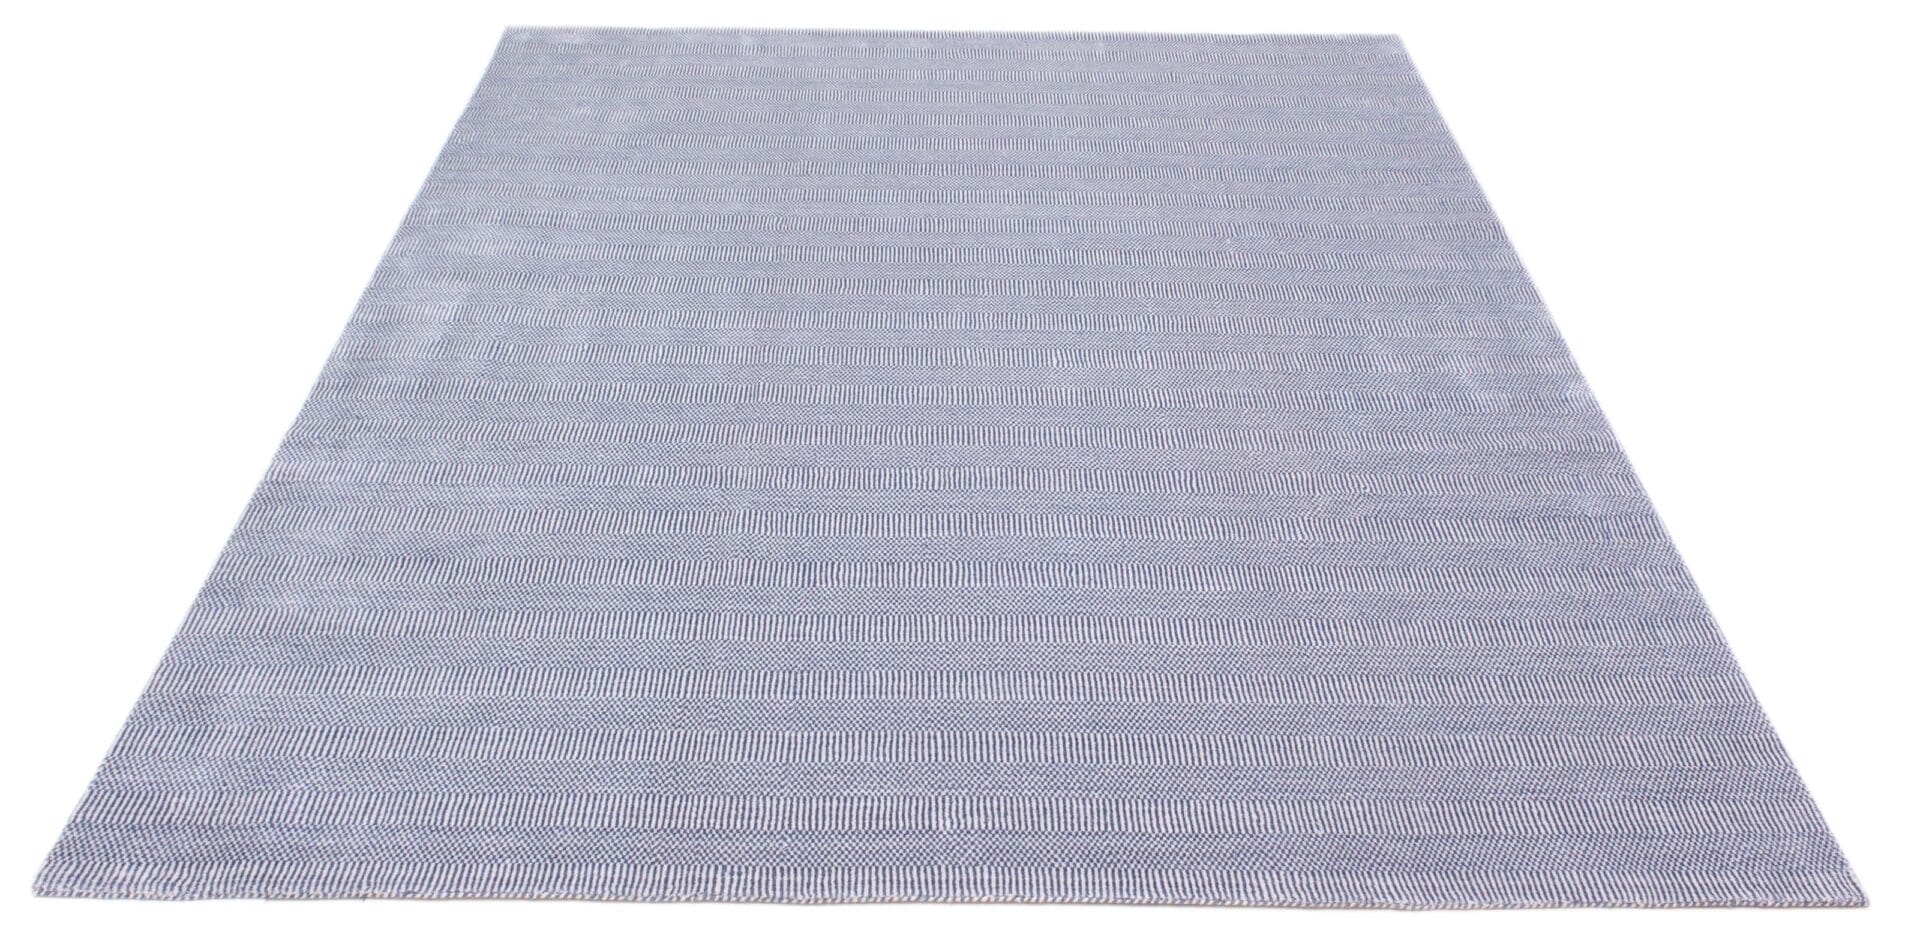 Een lichtblauw tapijt op een witte achtergrond.